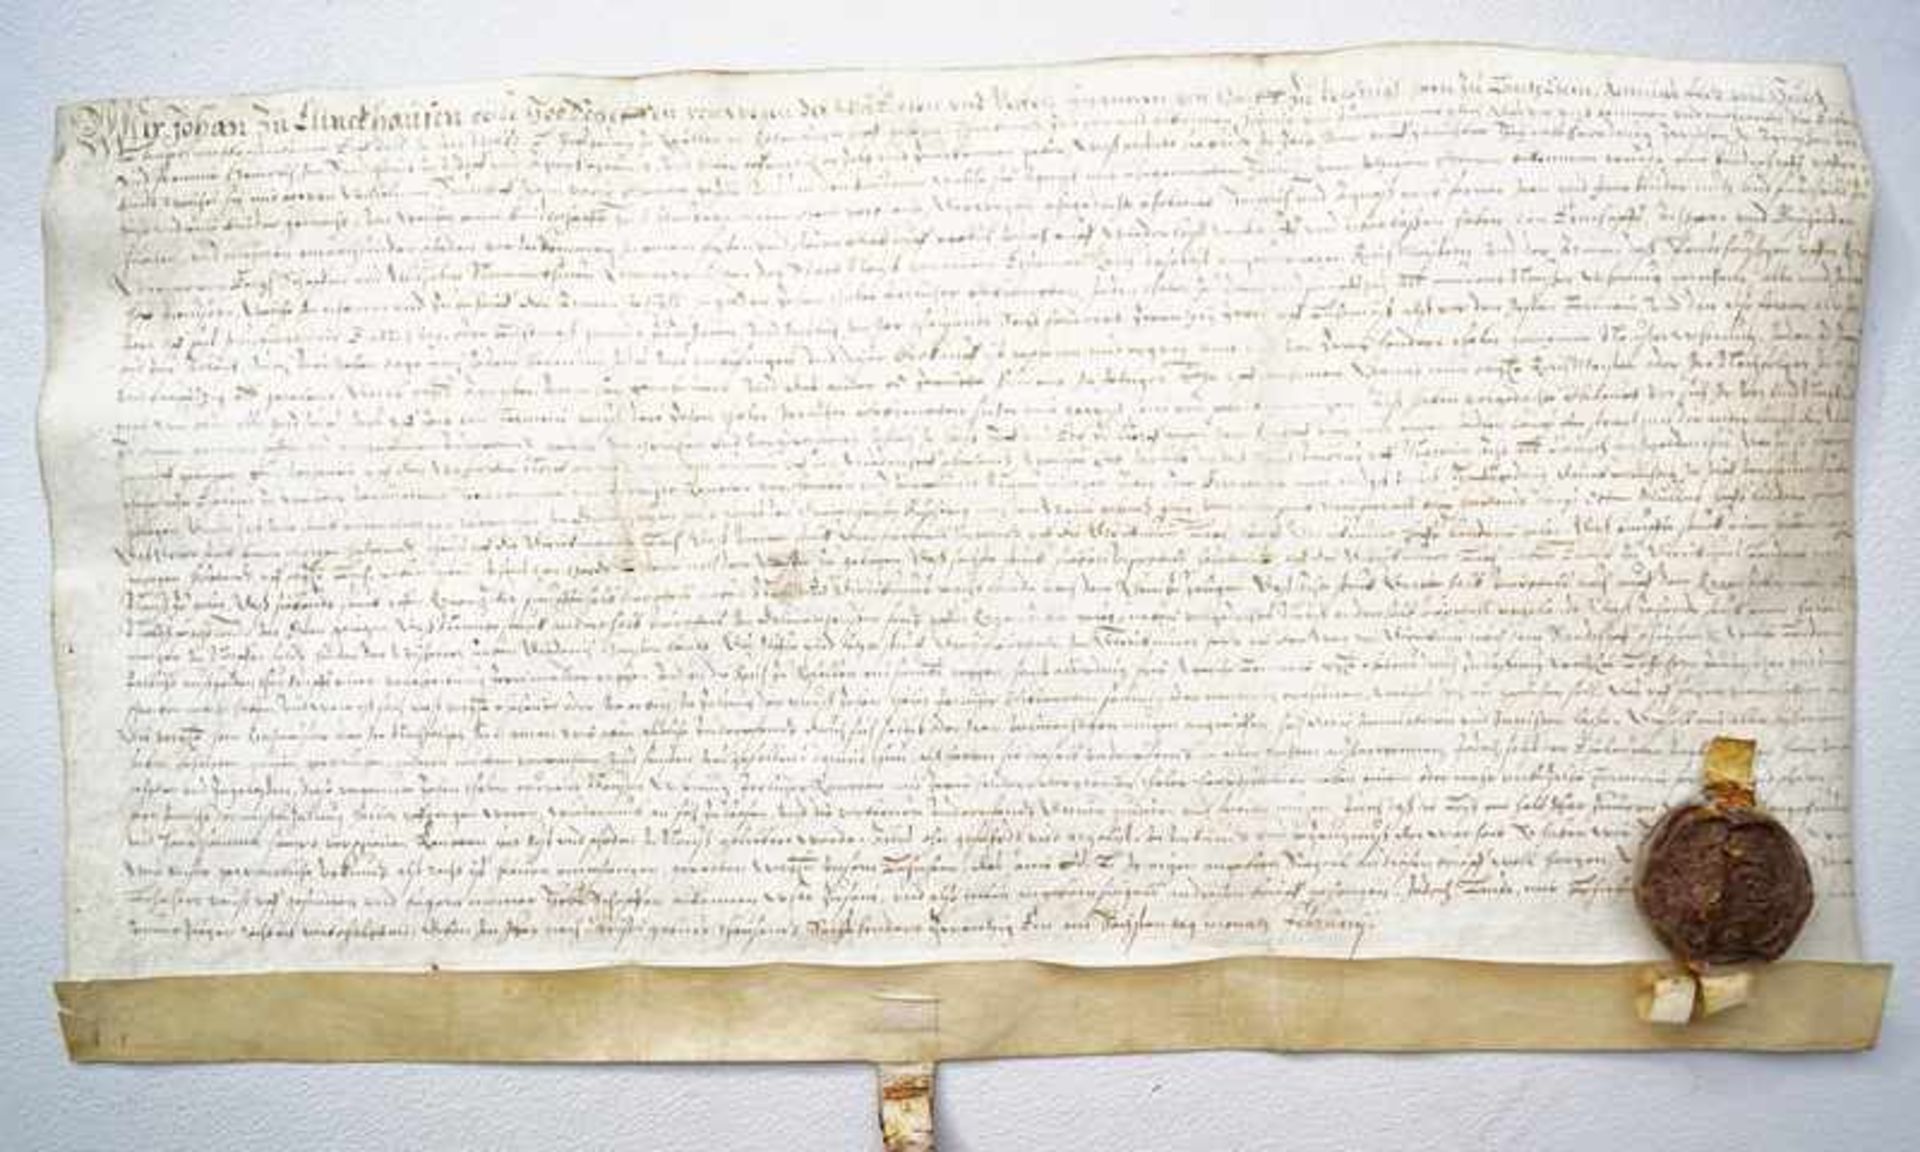 Rentenverschreibung von 1621 nebst Siegel und LegendeBraune Tinte auf Pergament , Hofschulte